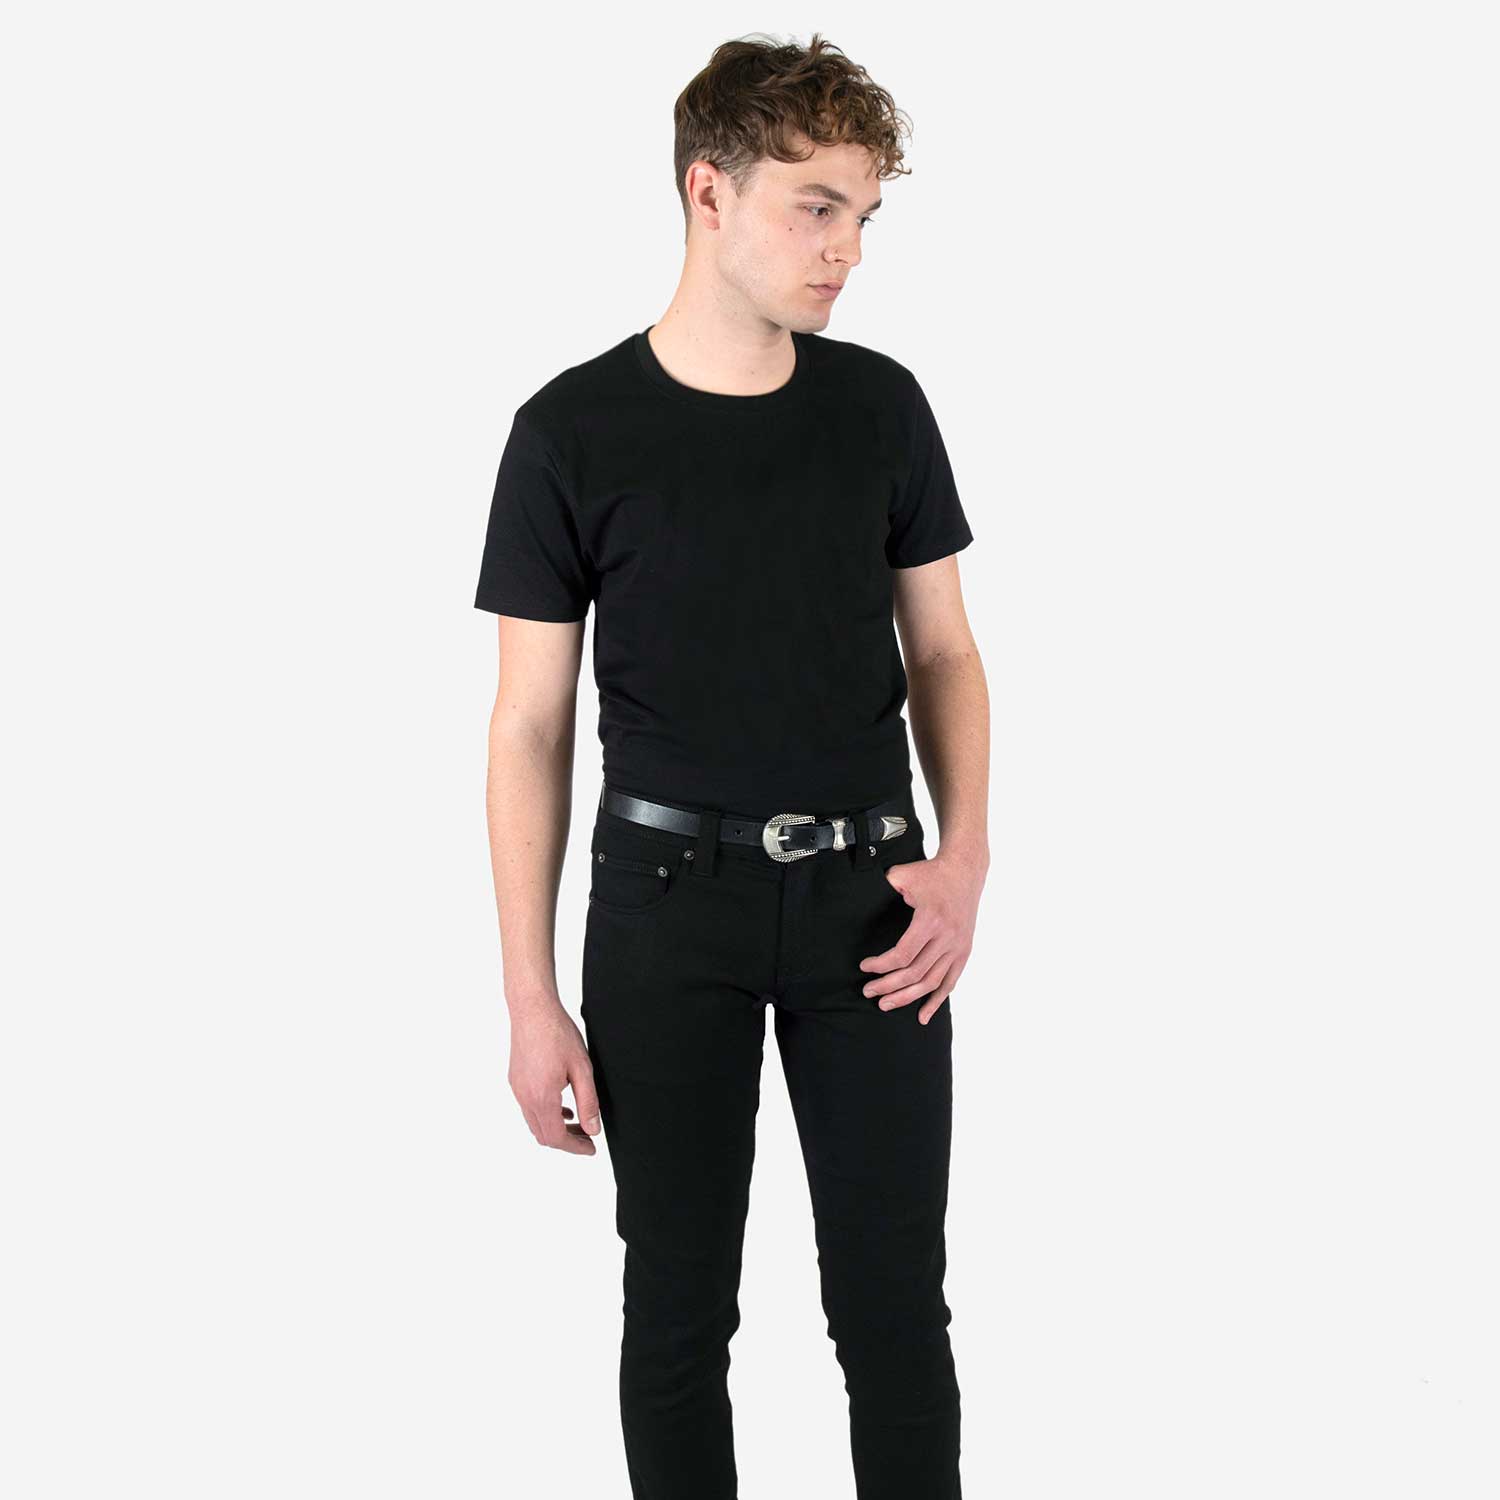 Perfect Black Tee - Black T-Shirt (Size M, L, XL, 2XL) | Straight To ...